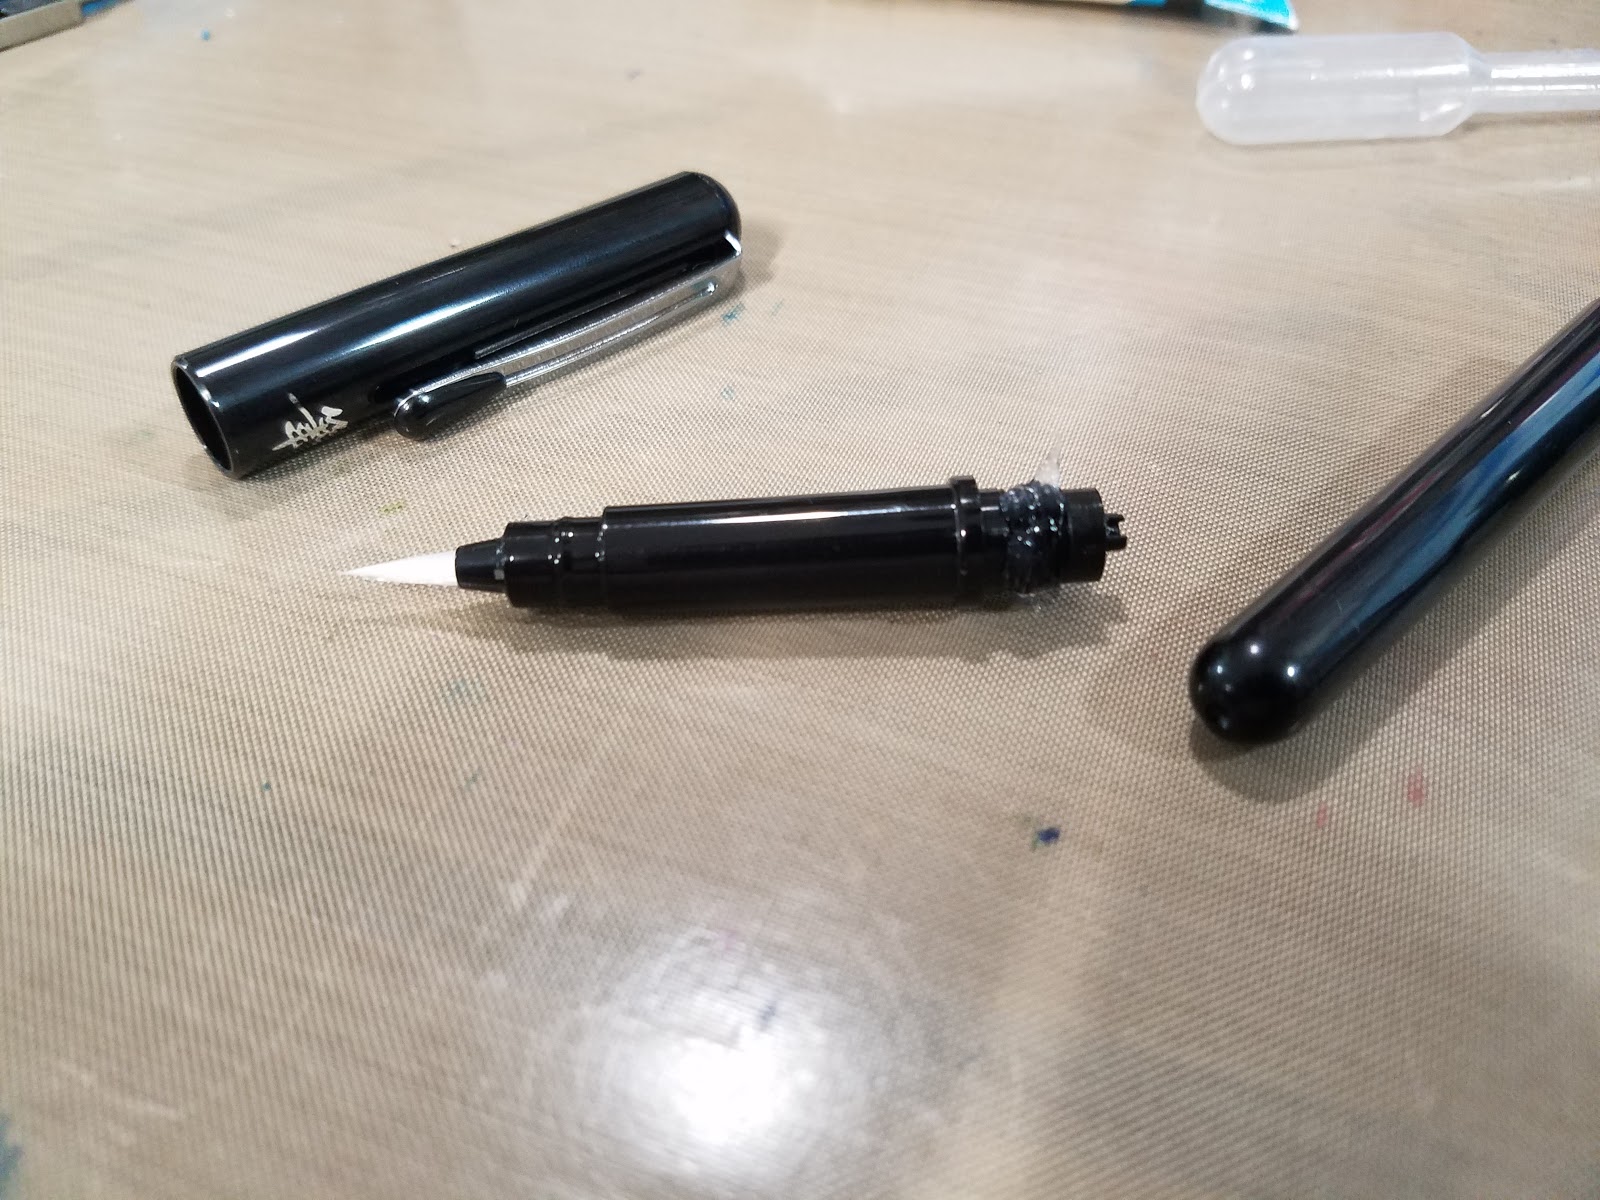 Review: Update Pentel Pocket Brush Pen to Eyedropper